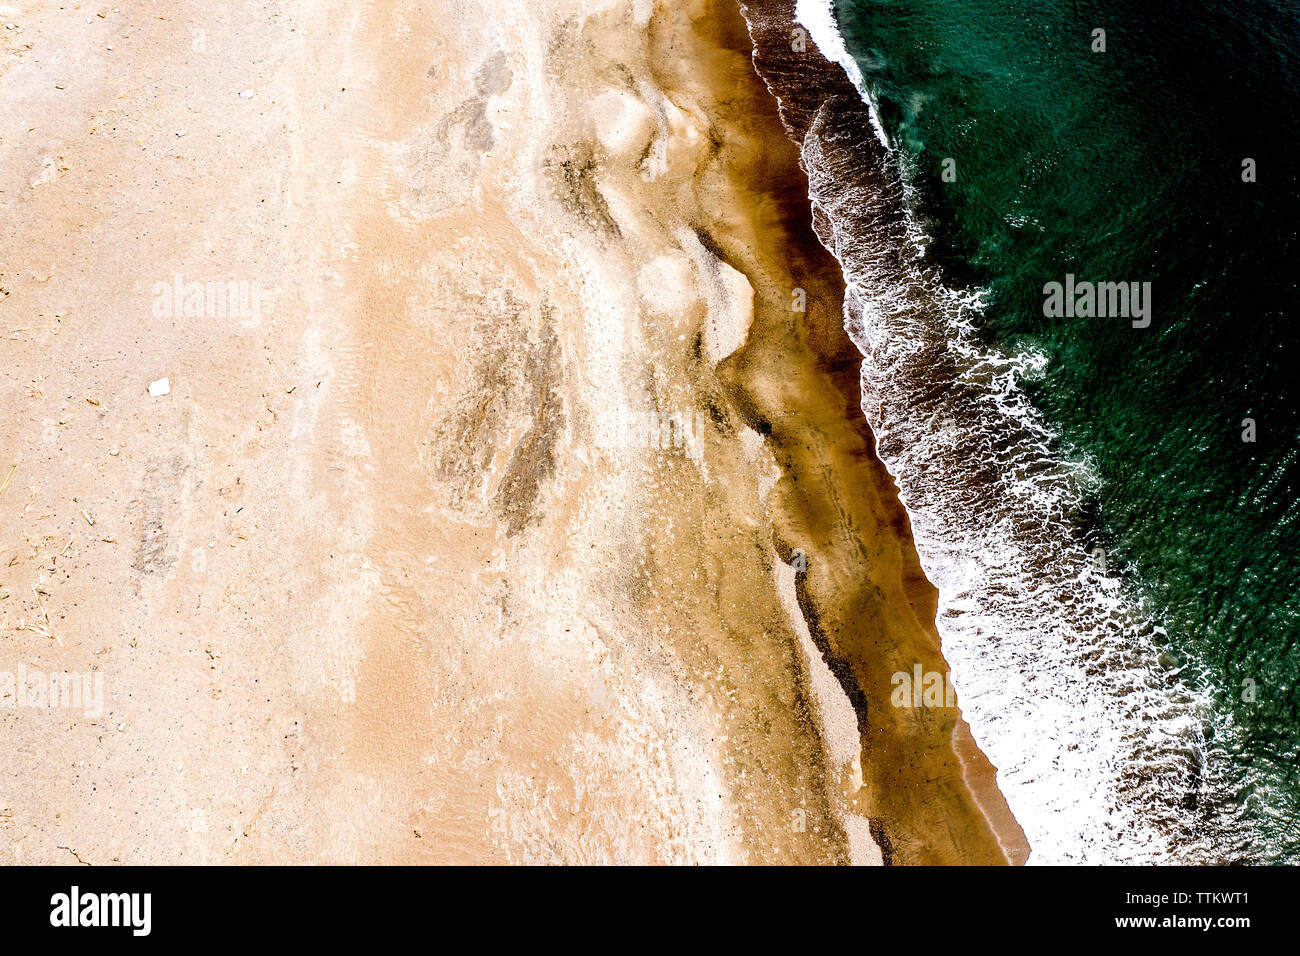 Vista aerea della spiaggia deserta e la zona costiera in Giappone Foto Stock